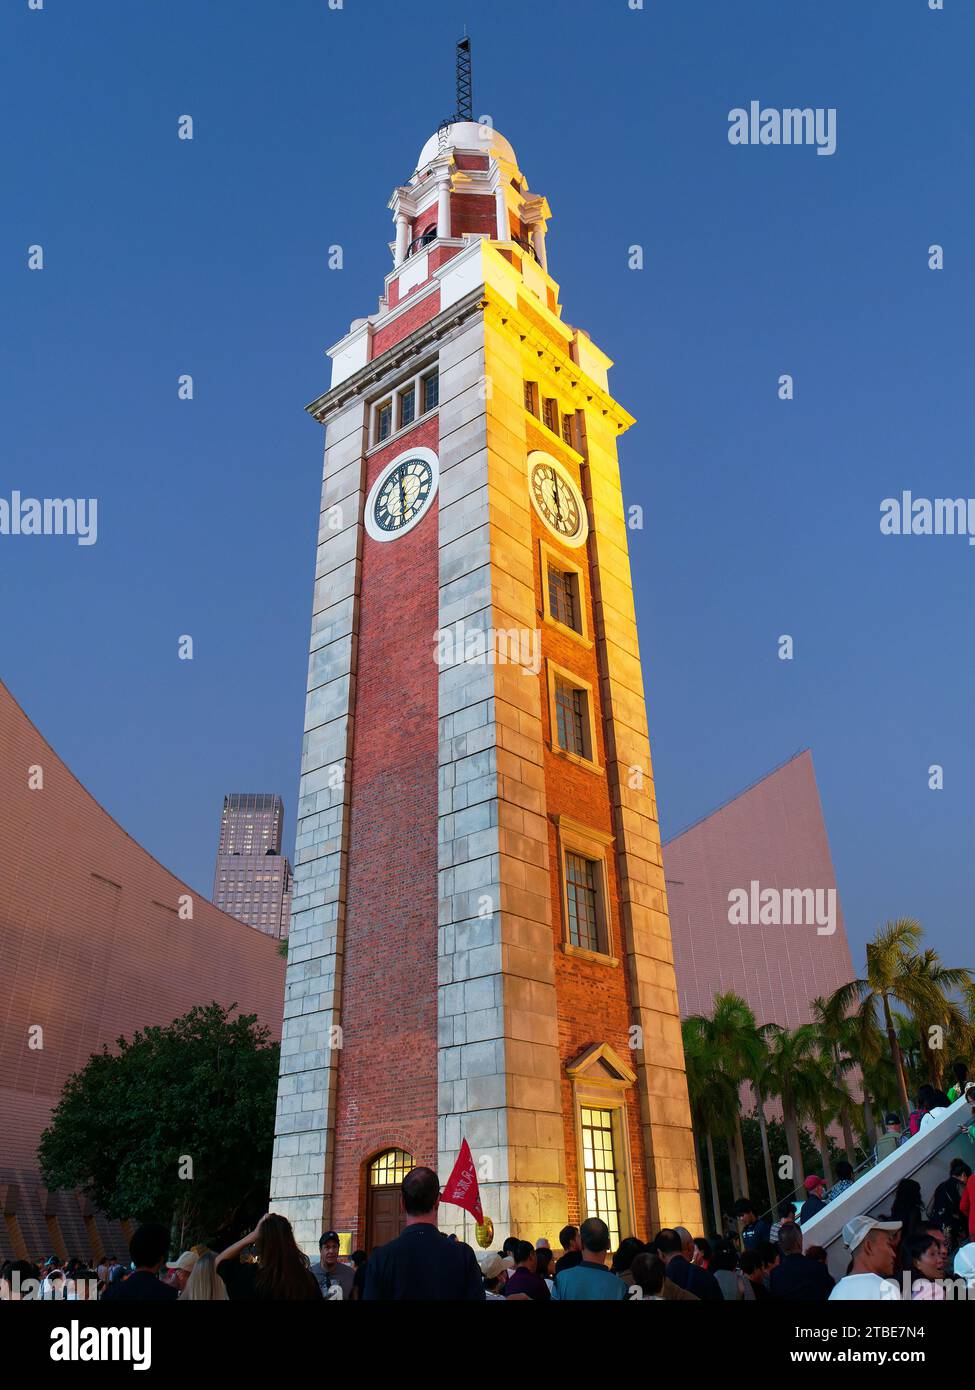 Regardant vers le haut la vieille tour de l'horloge de la gare de Kowloon à Hong Kong au crépuscule Banque D'Images